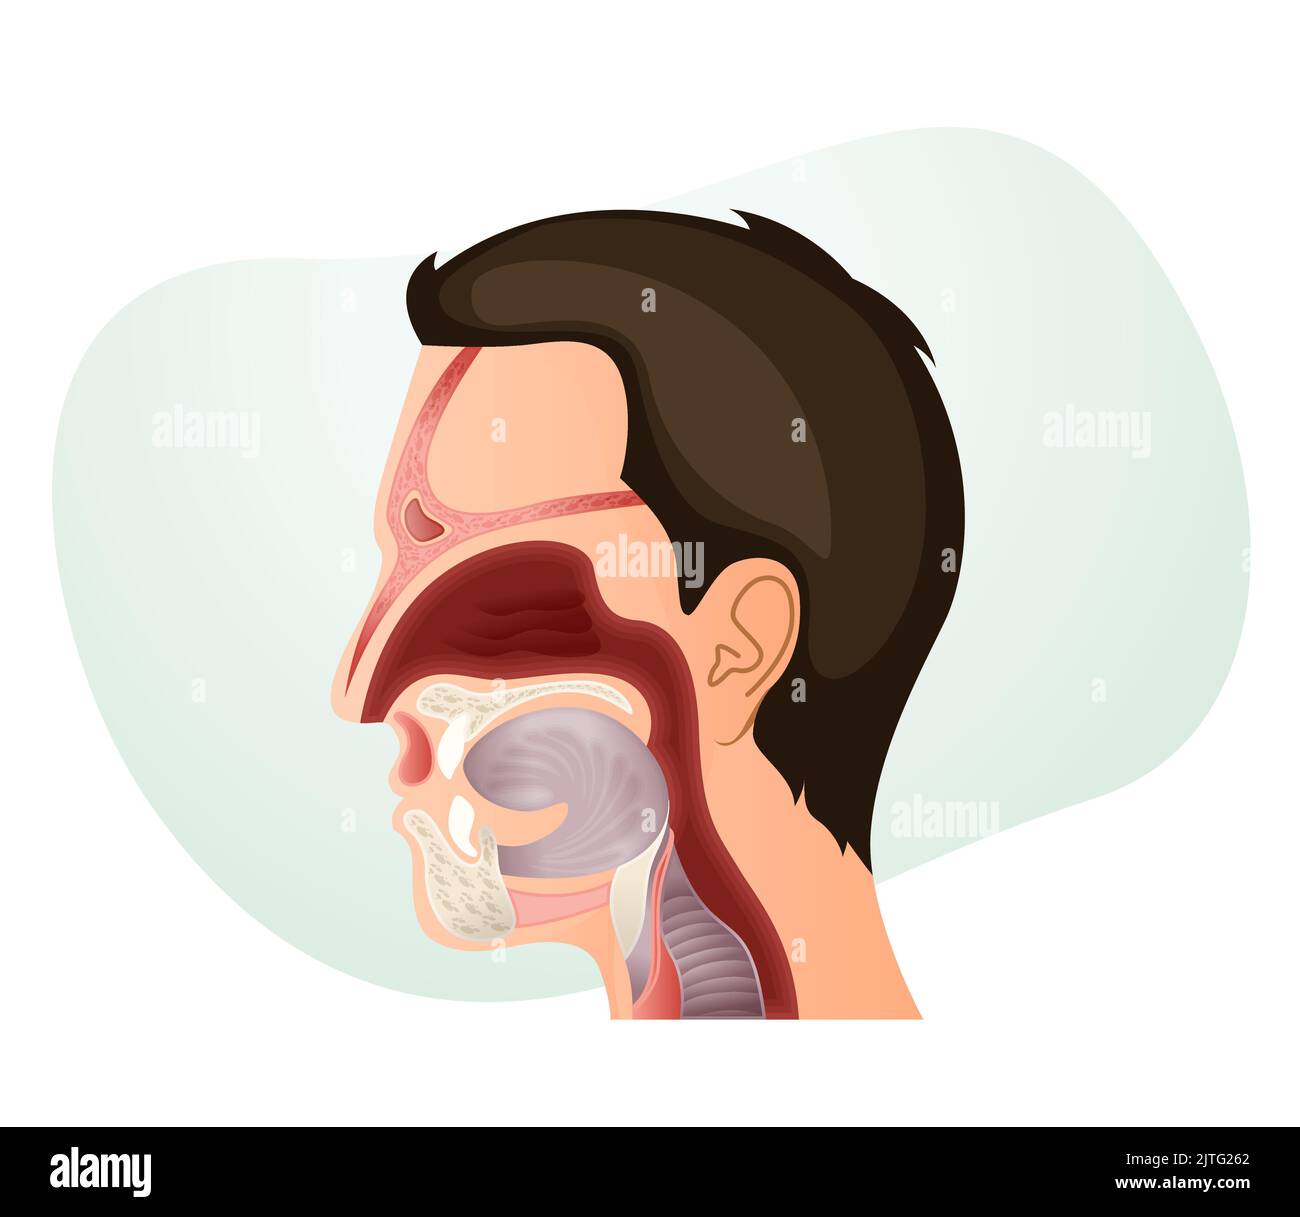 Anatomie de la cavité nasale et du visage humain - Illustration sous forme de fichier EPS 10 Illustration de Vecteur